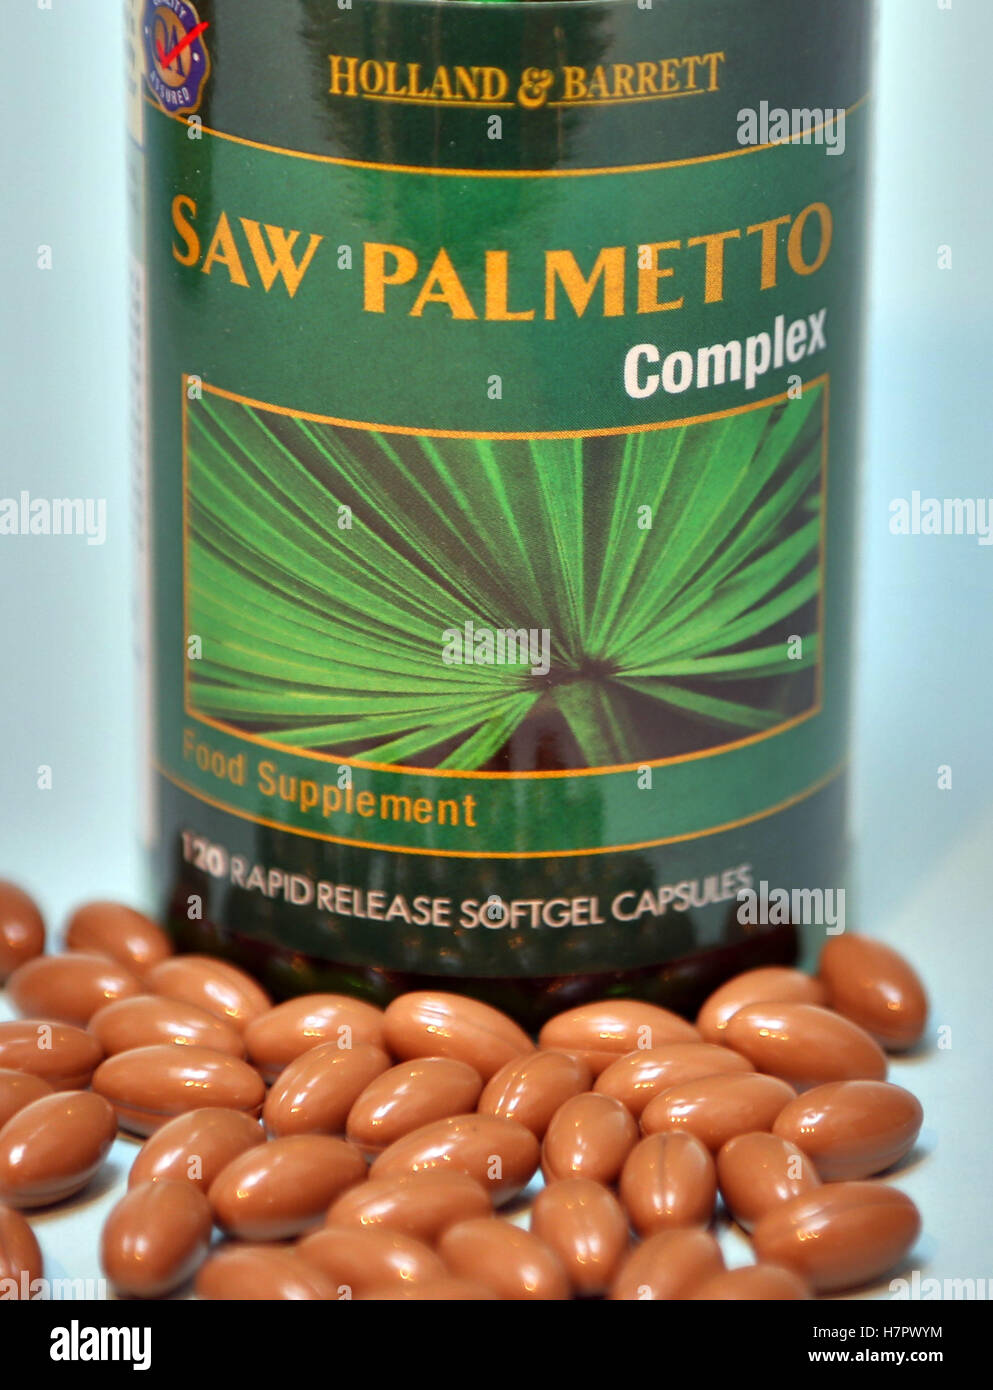 Saw palmetto integratore alimentare capsule, Londra Foto Stock